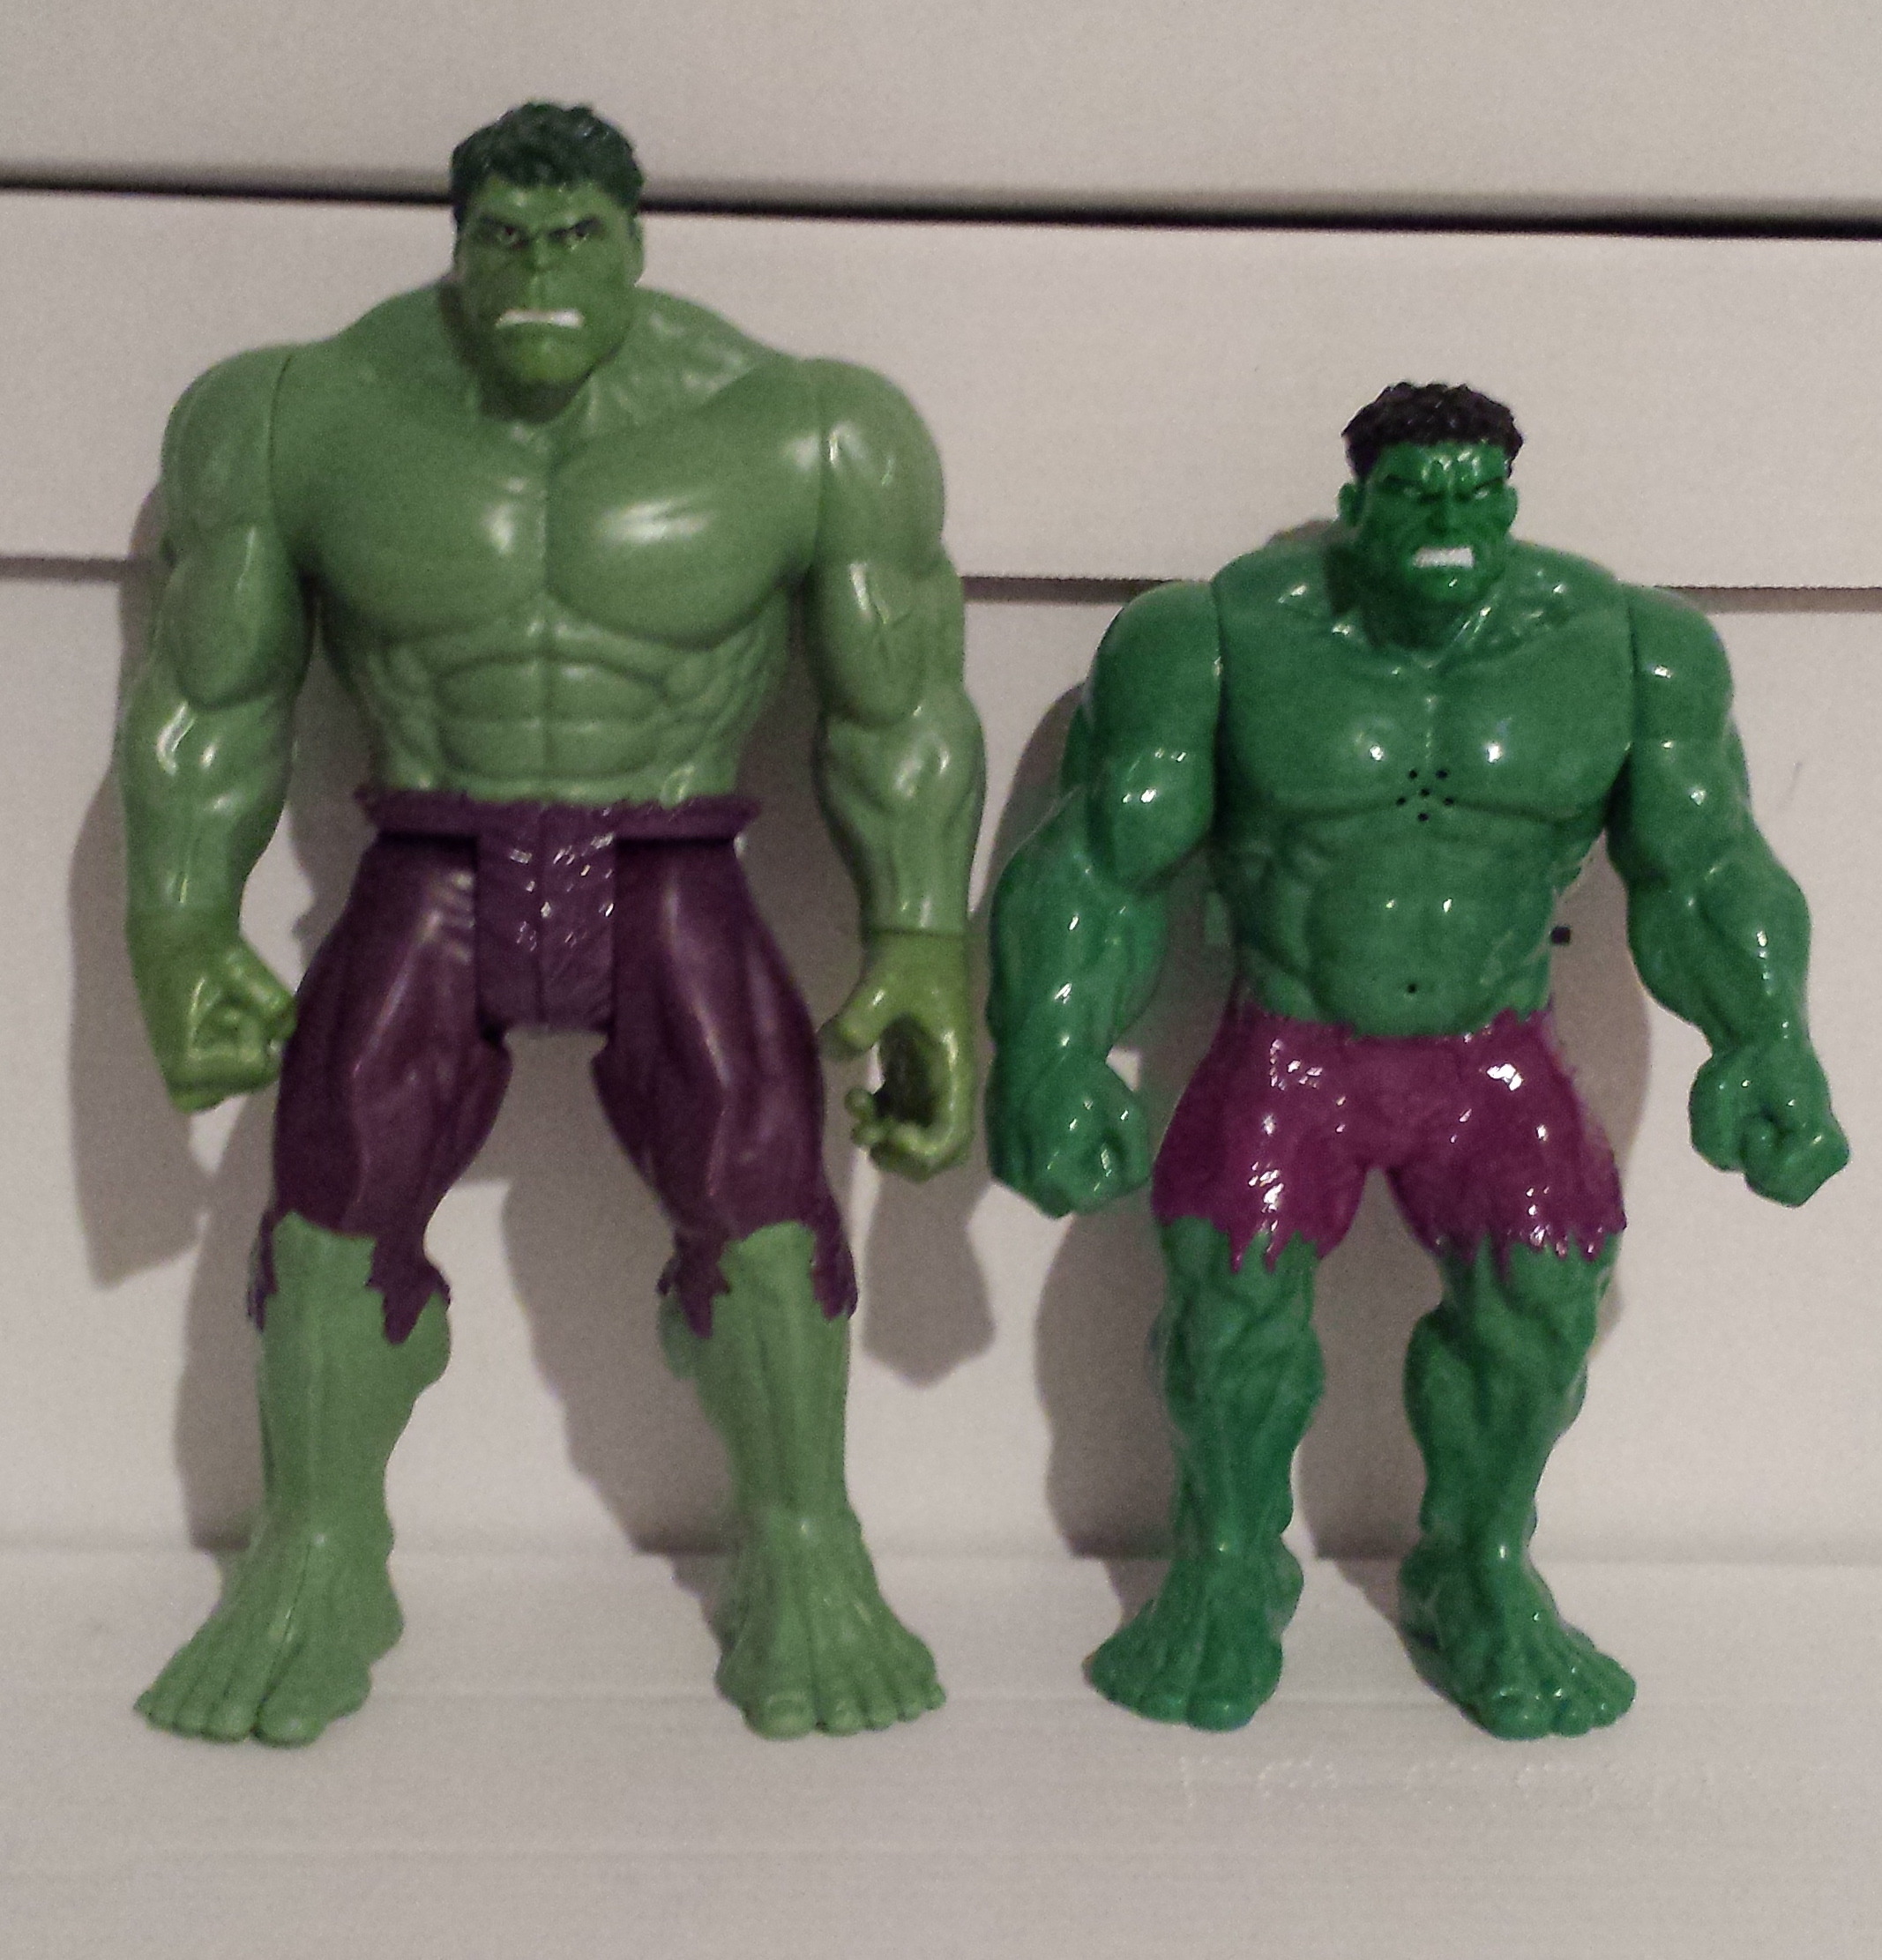 Пластилина халка. Hulk 2003 игрушка. Халк 2003 игрушка фигурка. Фигурка Халк Хасбро 2013. Hasbro 2009 Hulk.